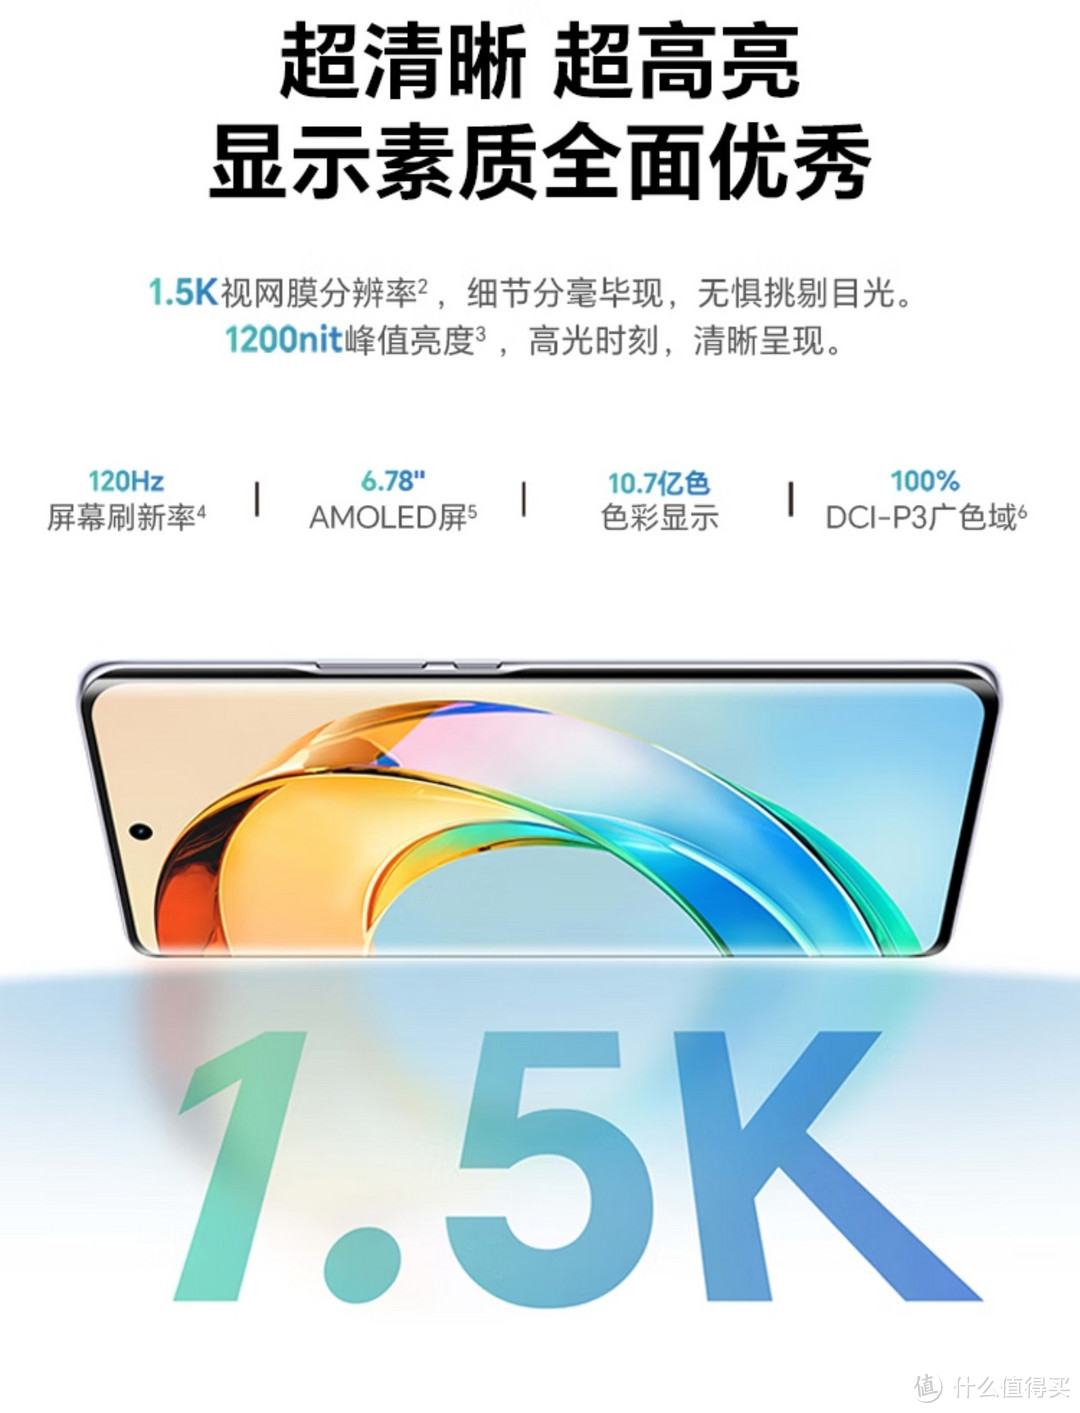 荣耀X50 第一代骁龙6芯片 1.5K超清护眼硬核曲屏 5800mAh超耐久大电池 5G手机 12GB+256GB 勃朗蓝